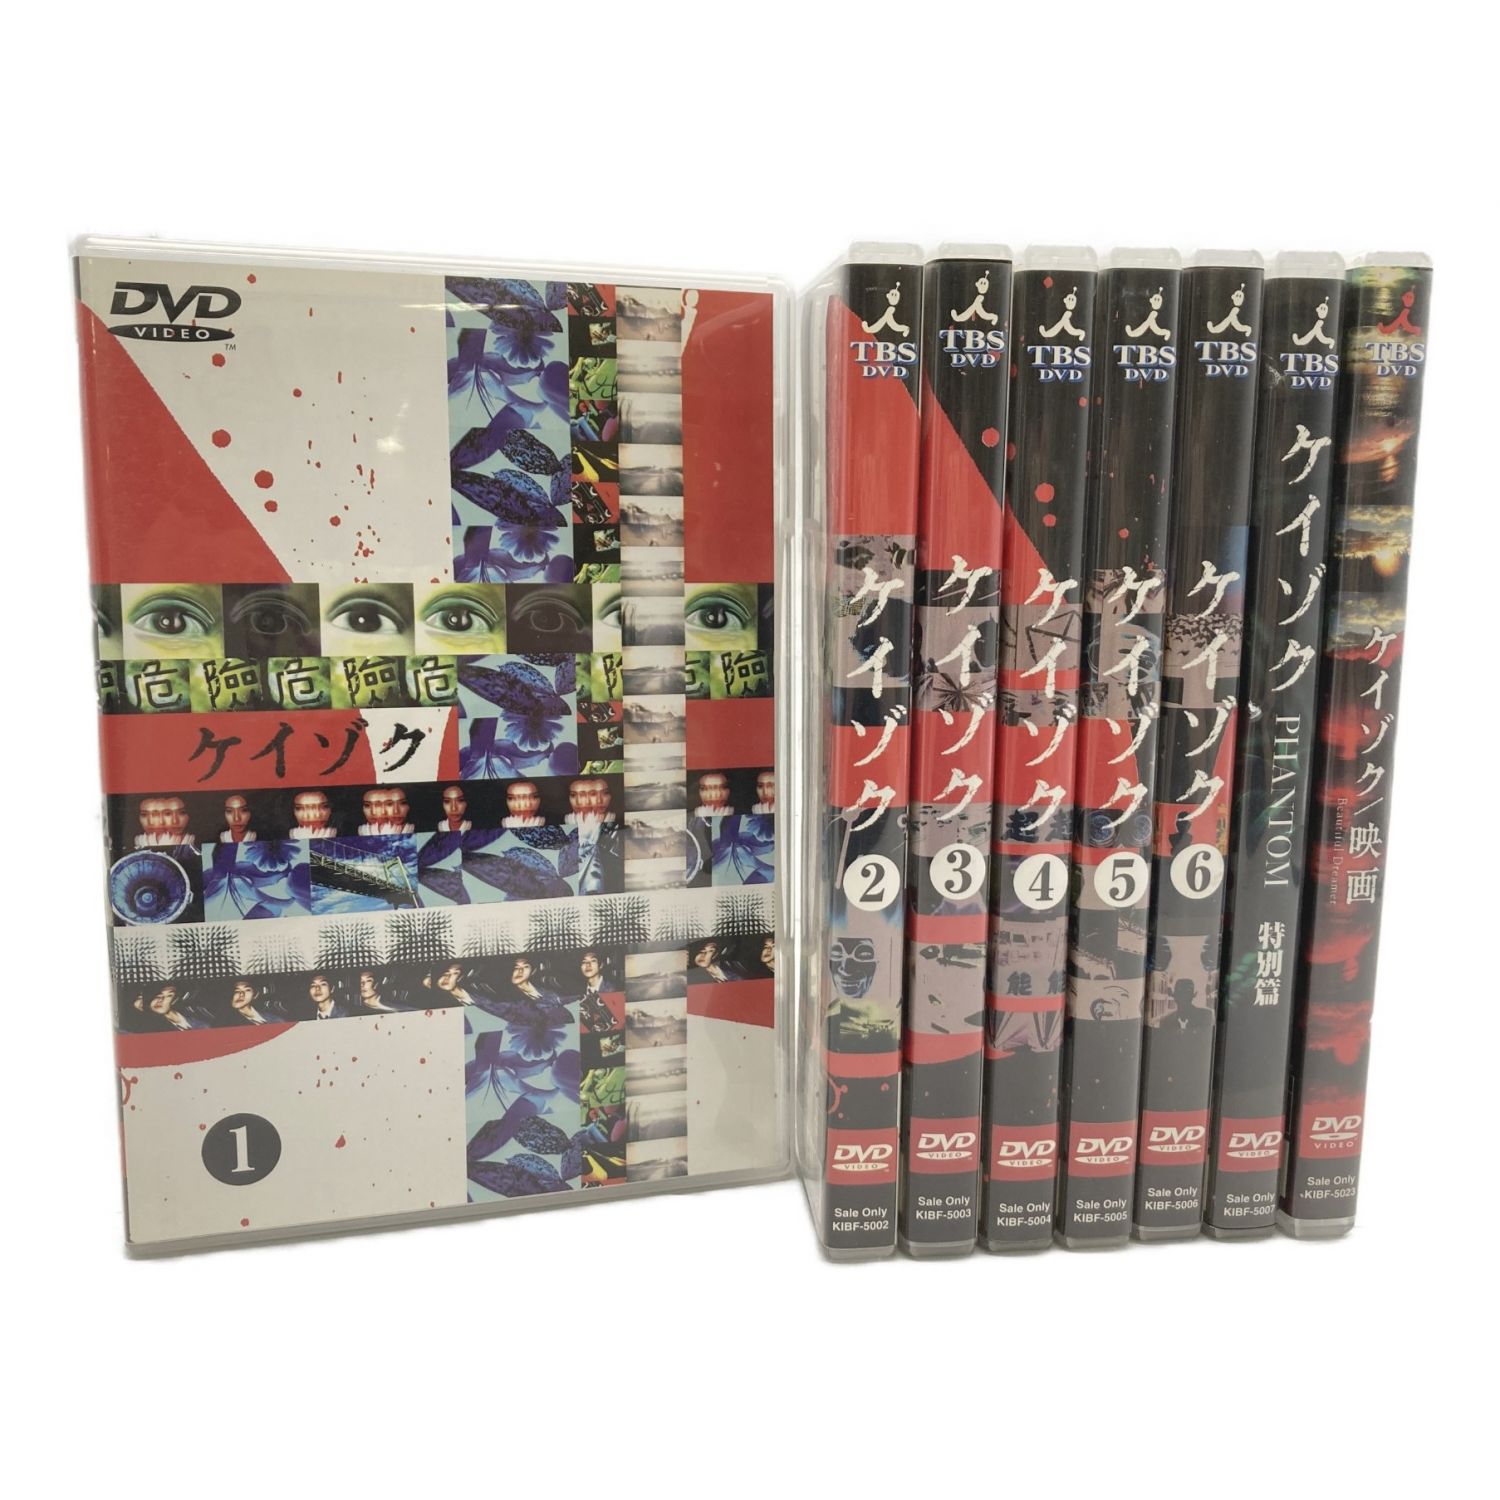 ケイゾク DVDセット 1~6巻+特別篇+映画